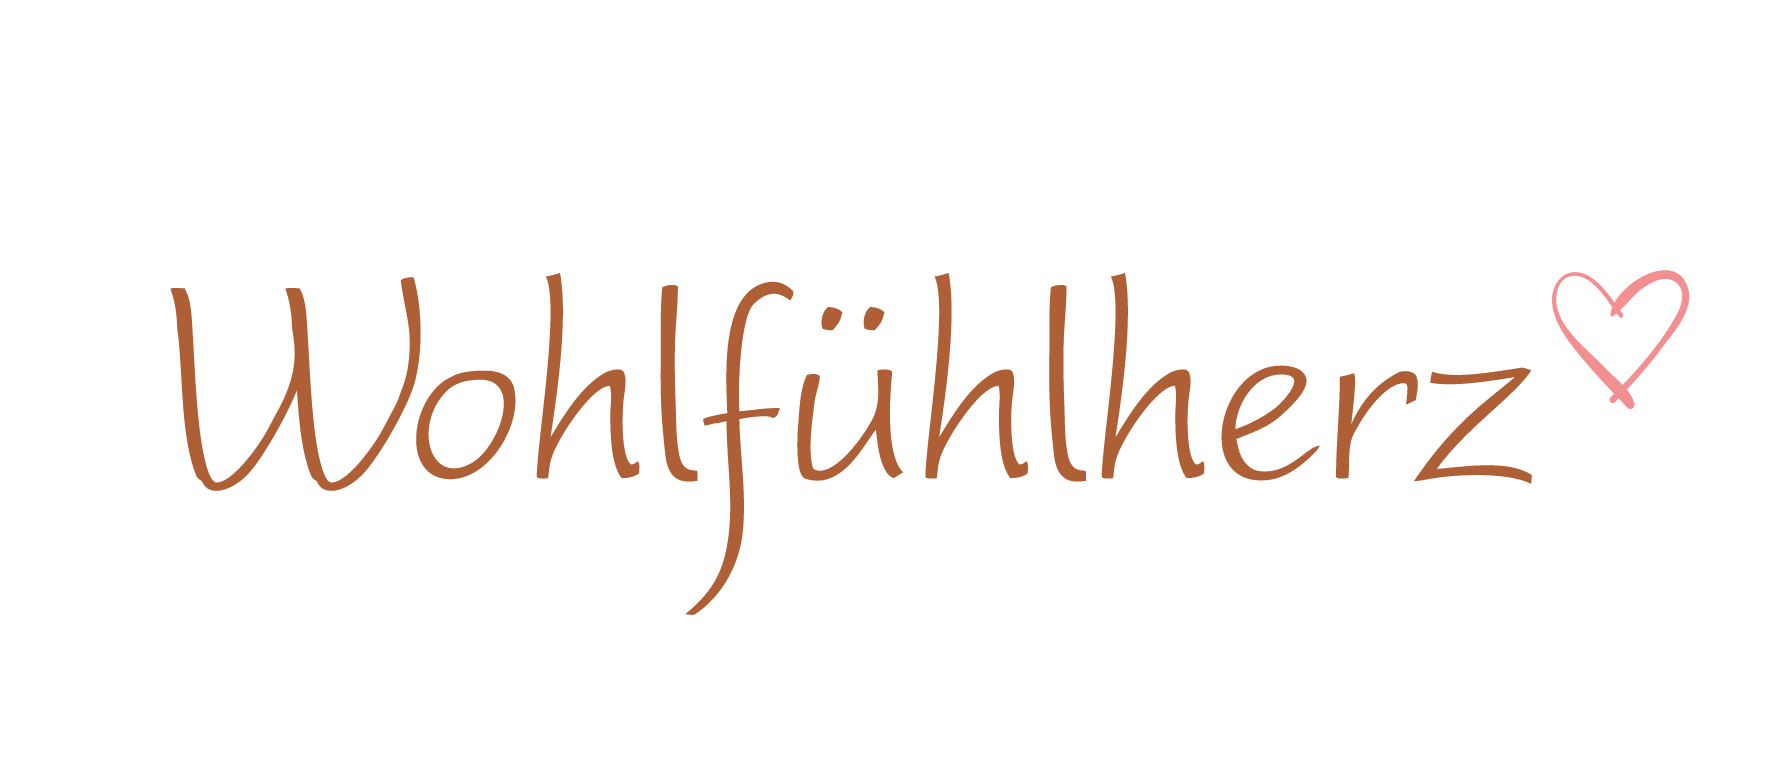 Wohlfuehlherz-Logo lang in Branding-Farben Kupfer und Koralle vor transparentem Hintergrund